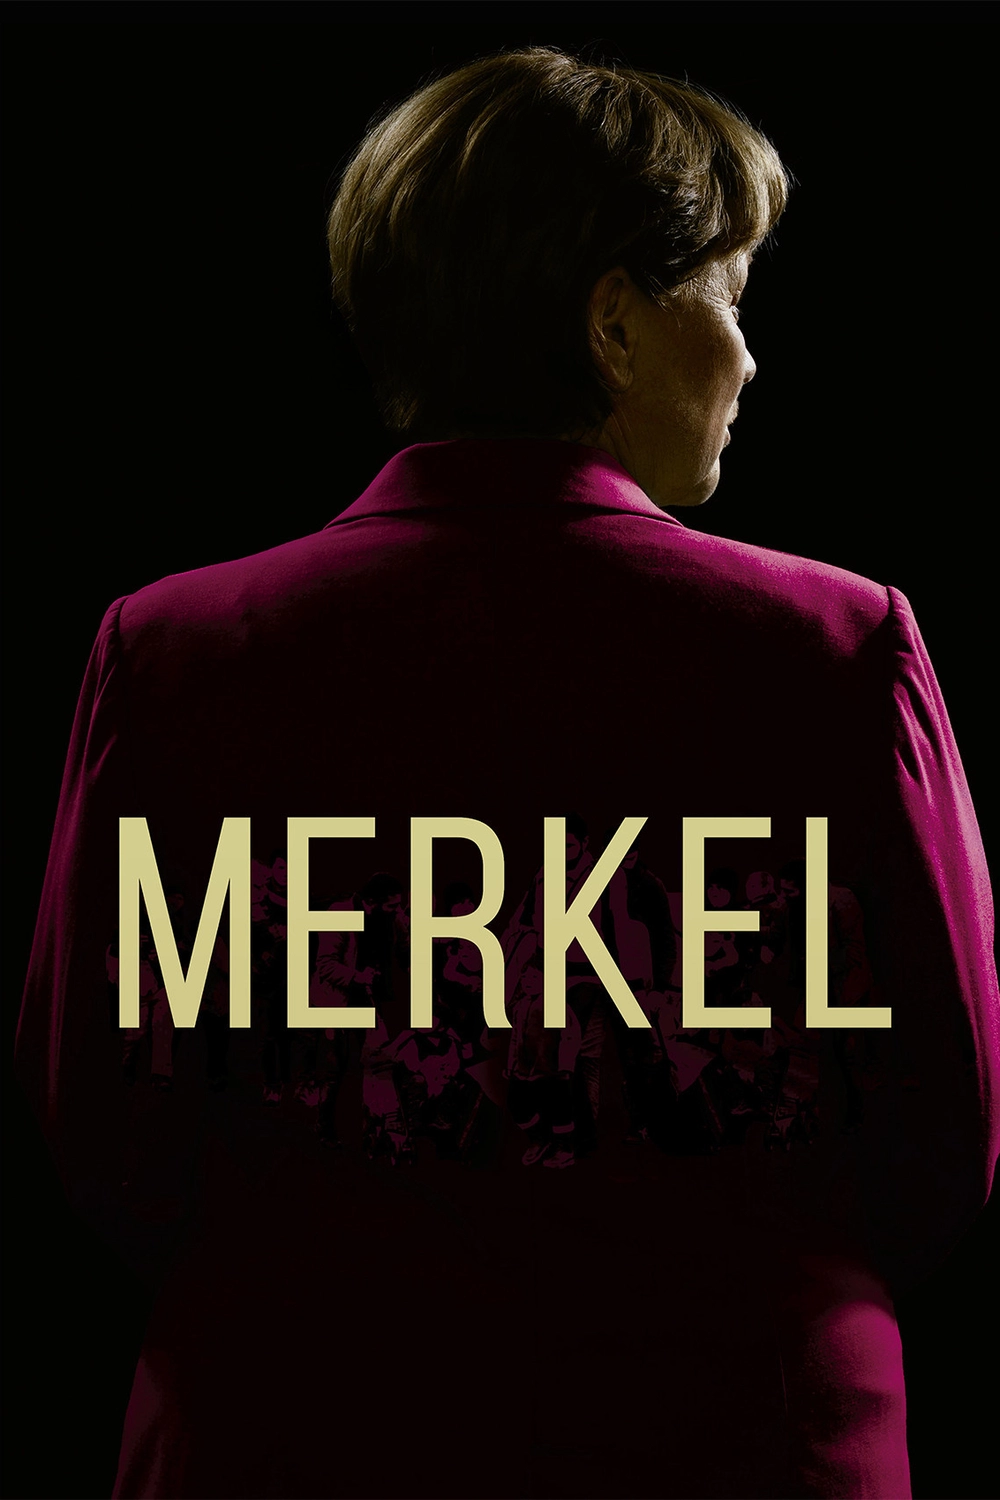 Merkel, ver ahora en Filmin